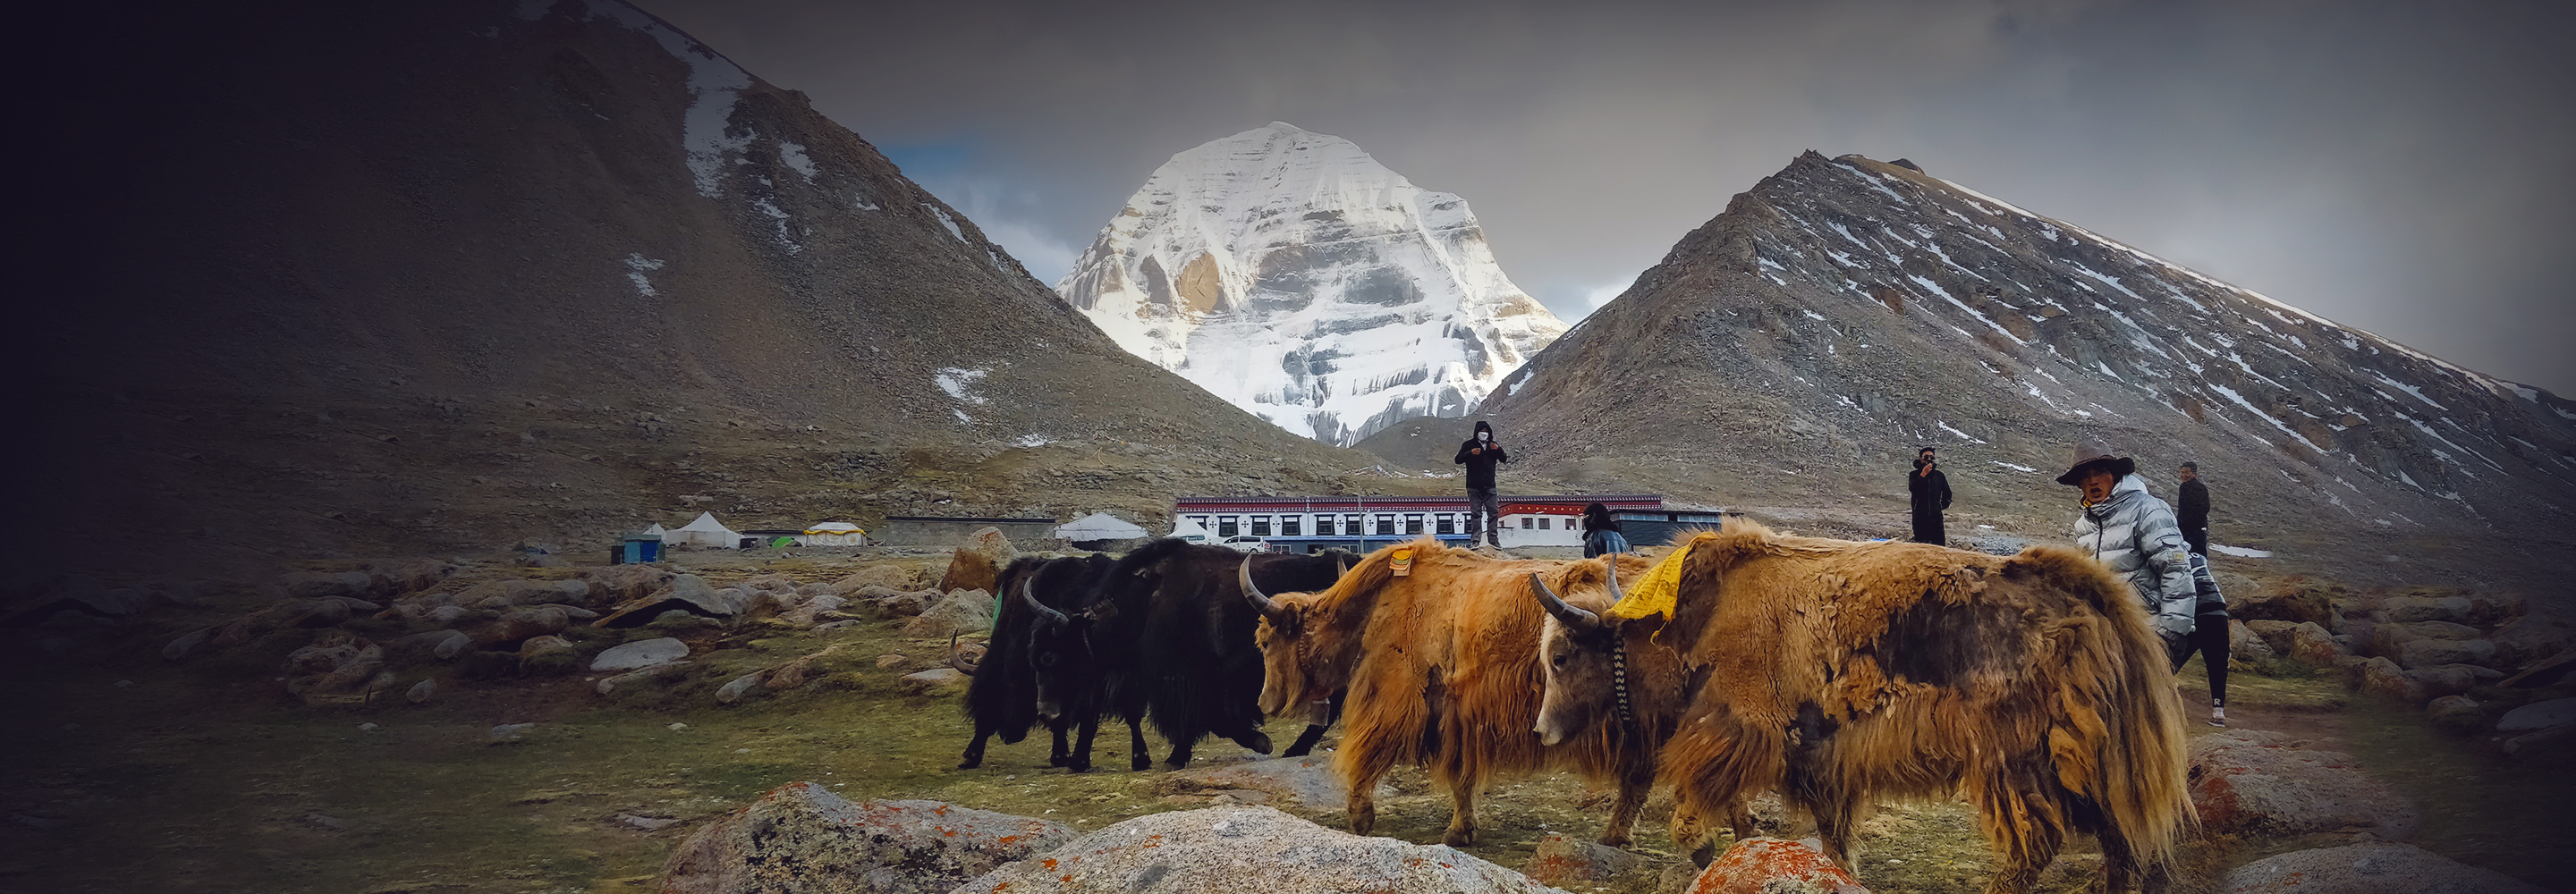 Дорога над пропастью и суровые лежанки: 11 вещей, которые меня потрясли в Тибете